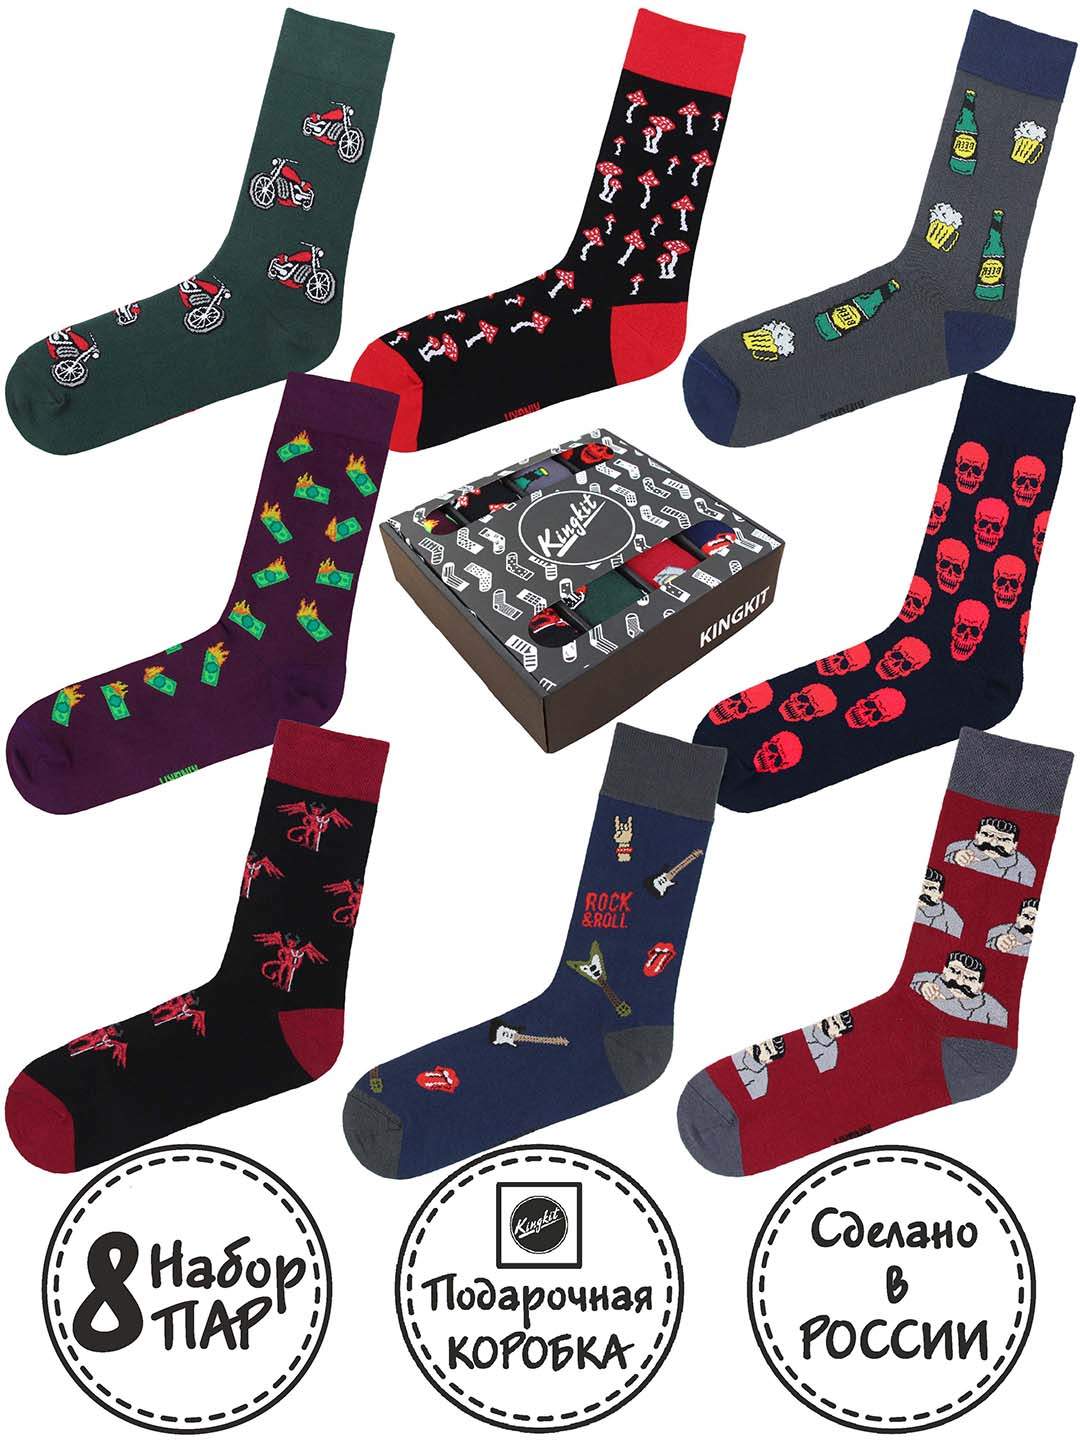 Подарочный набор носков унисекс Kingkit 8006 разноцветных 41-45, 8 пар